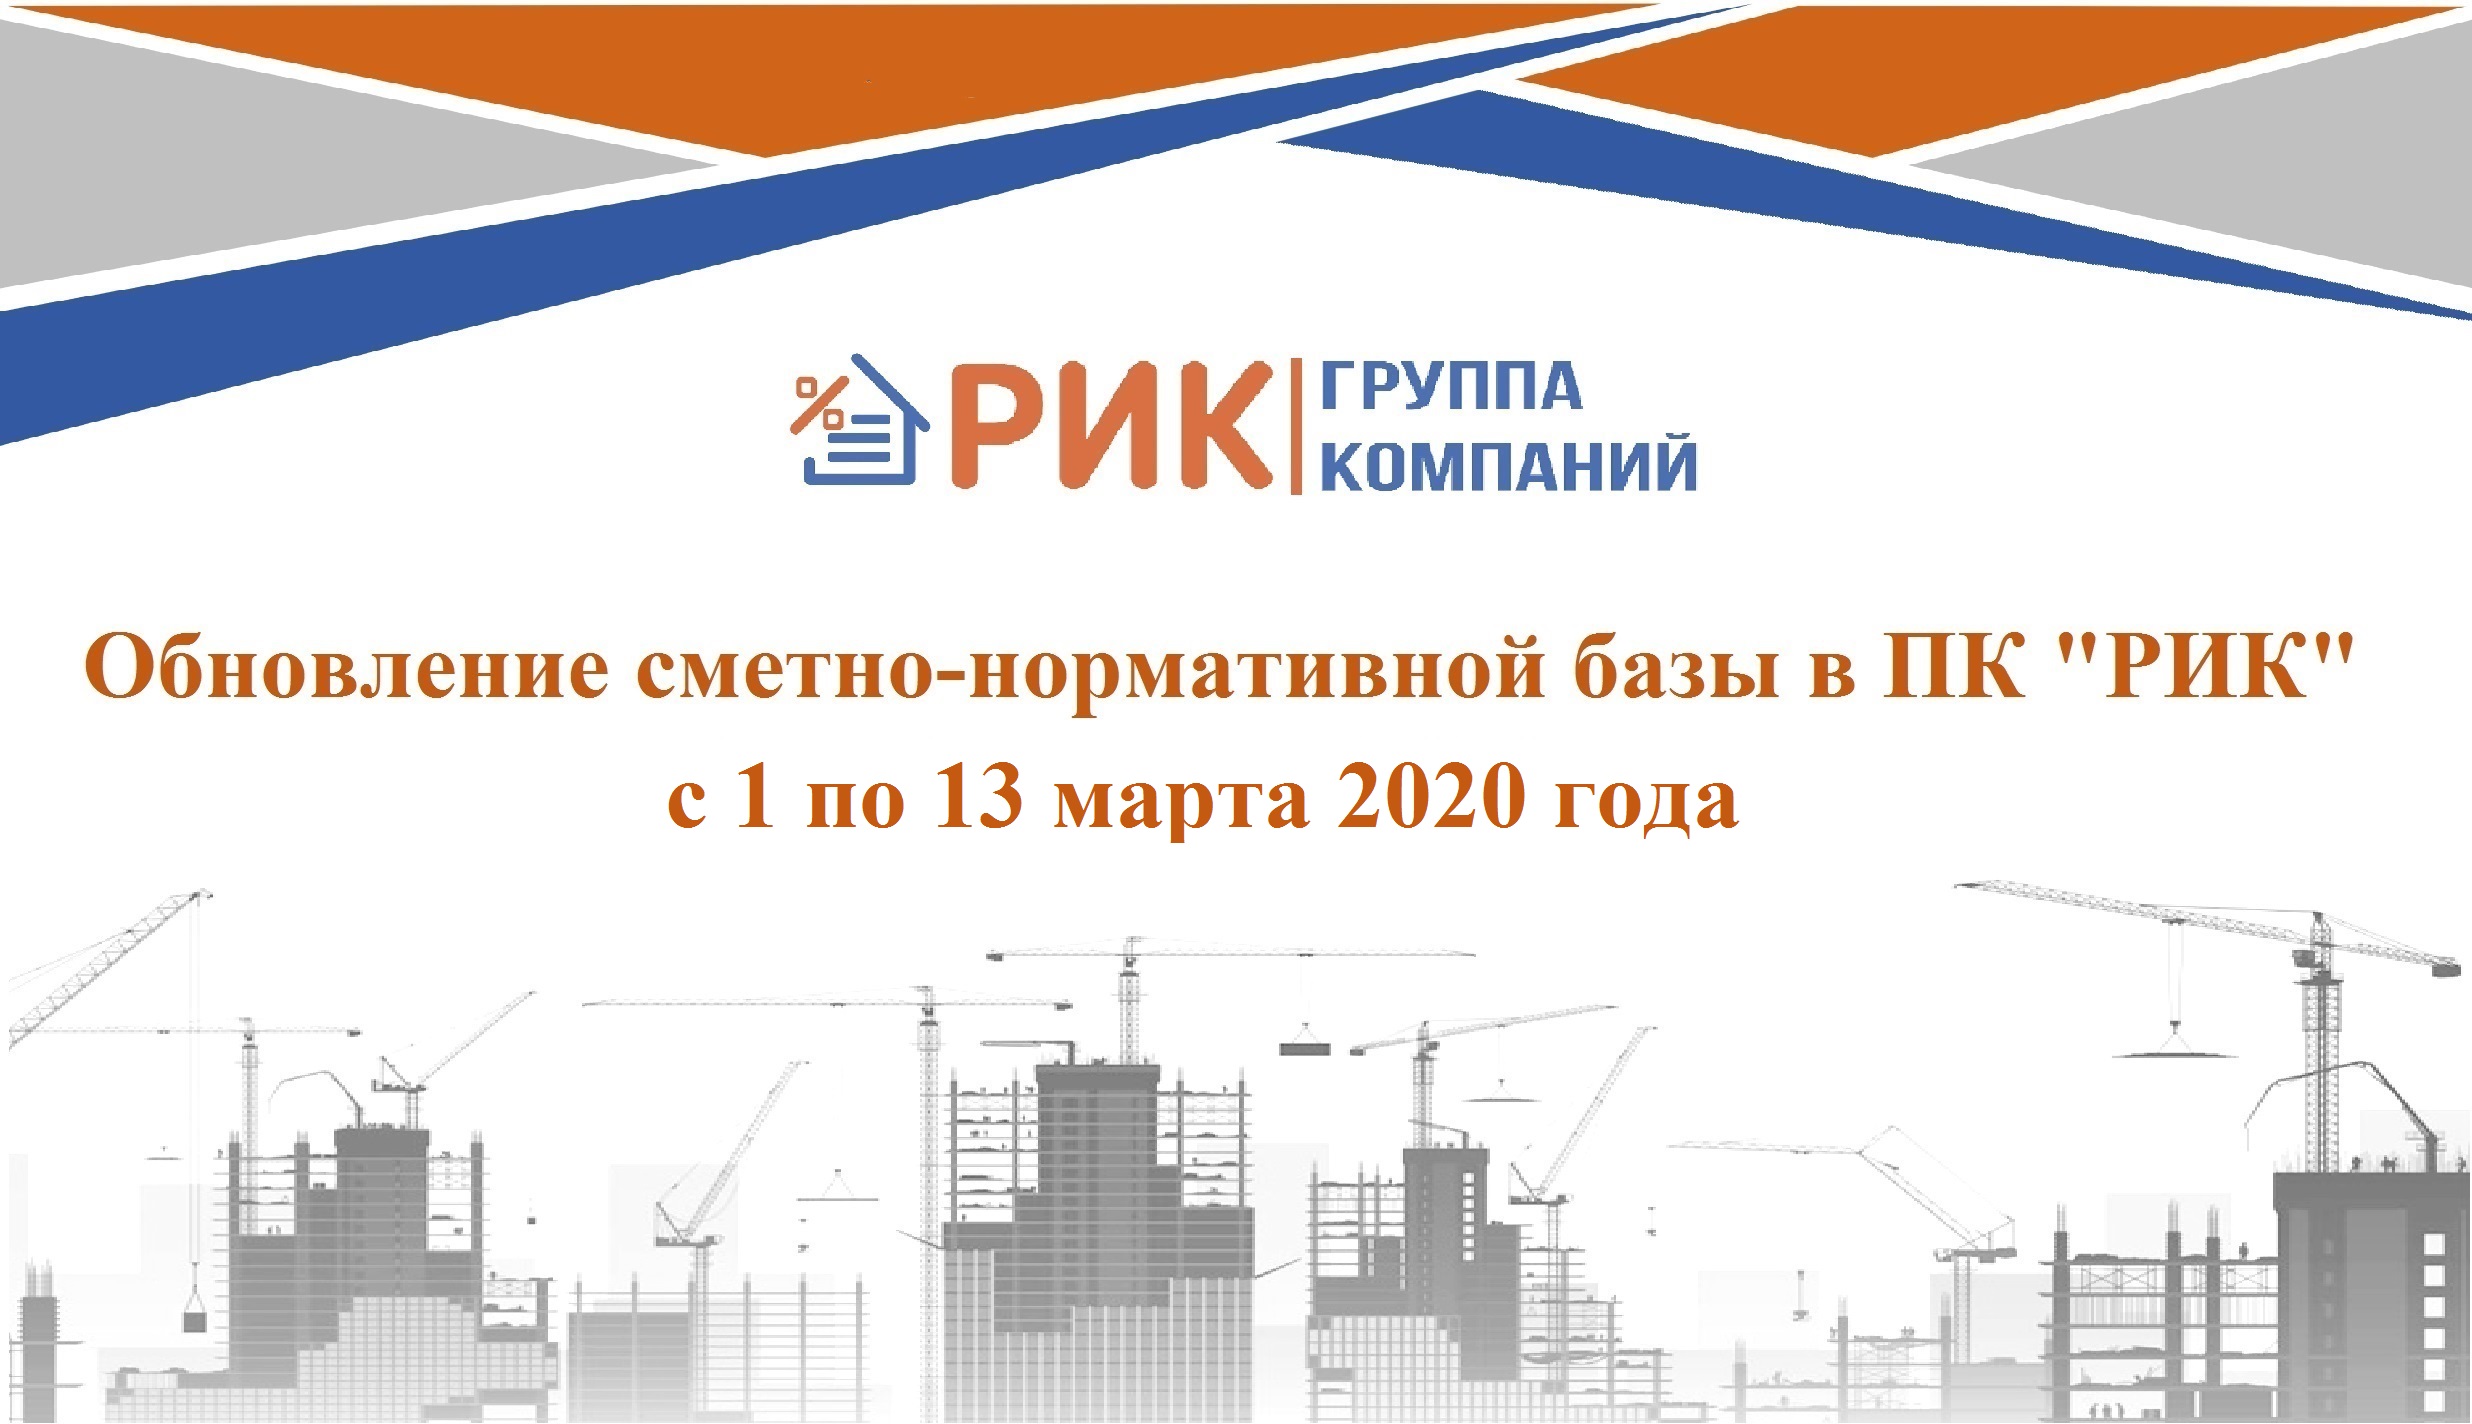 Обновление сметно-нормативной базы в ПК "РИК" с 1 по 13 марта 2020 года